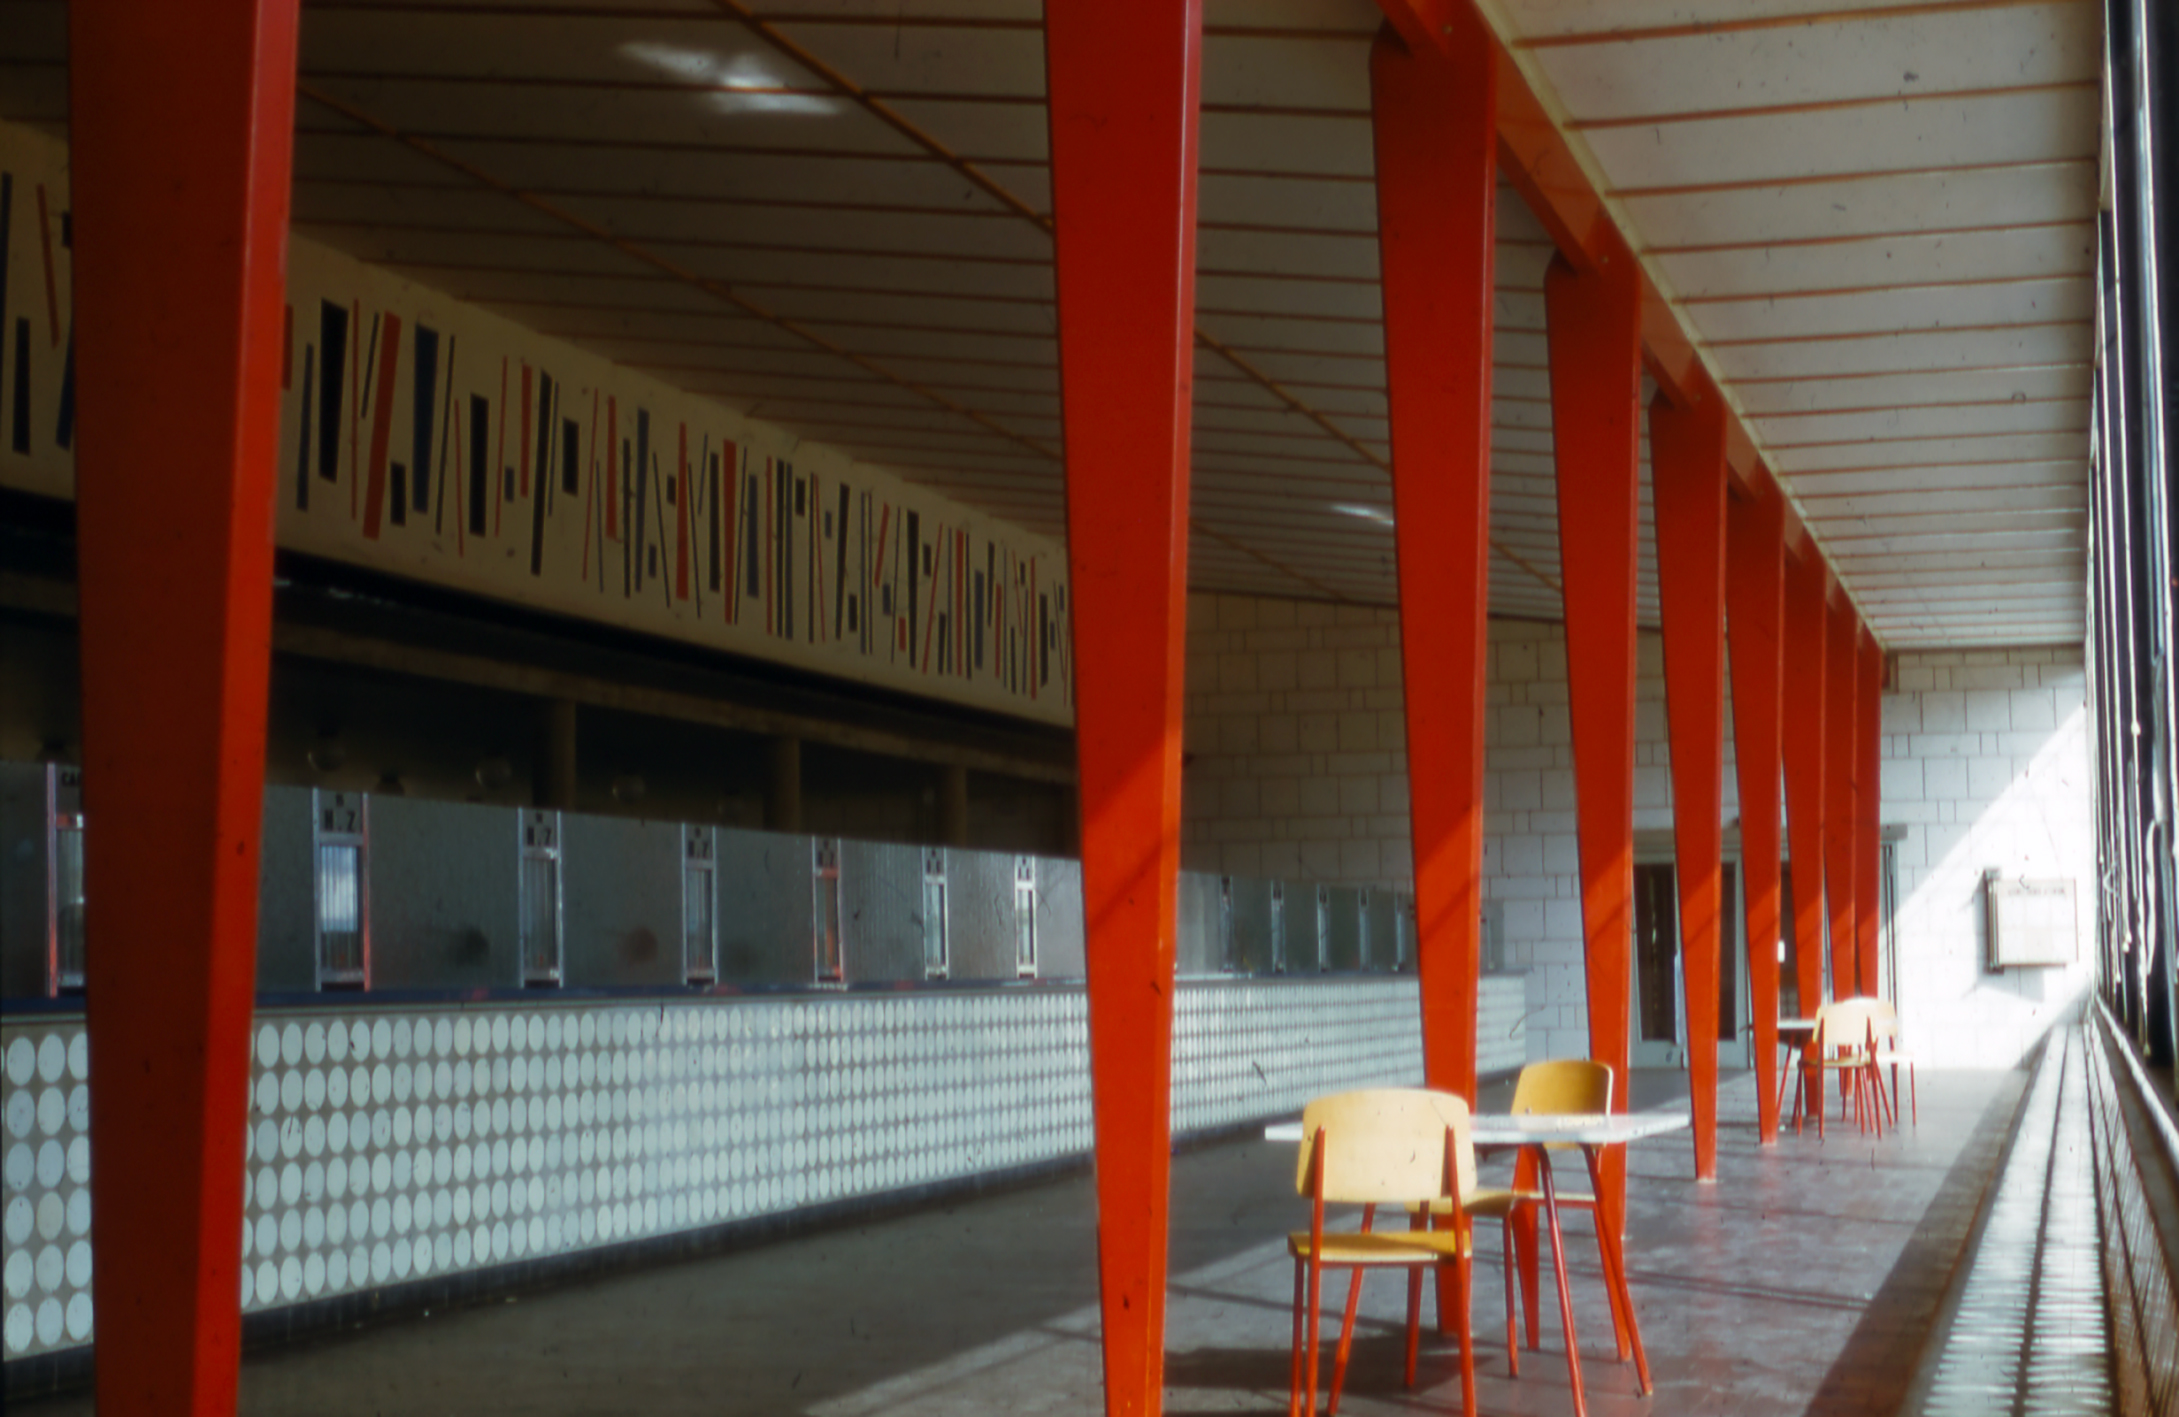 Sécurité Sociale building, Le Mans (architect J. Le Couteur, 1951). Benefit payments hall equipped with Métropole no. 305 chairs from Ateliers Jean Prouvé.